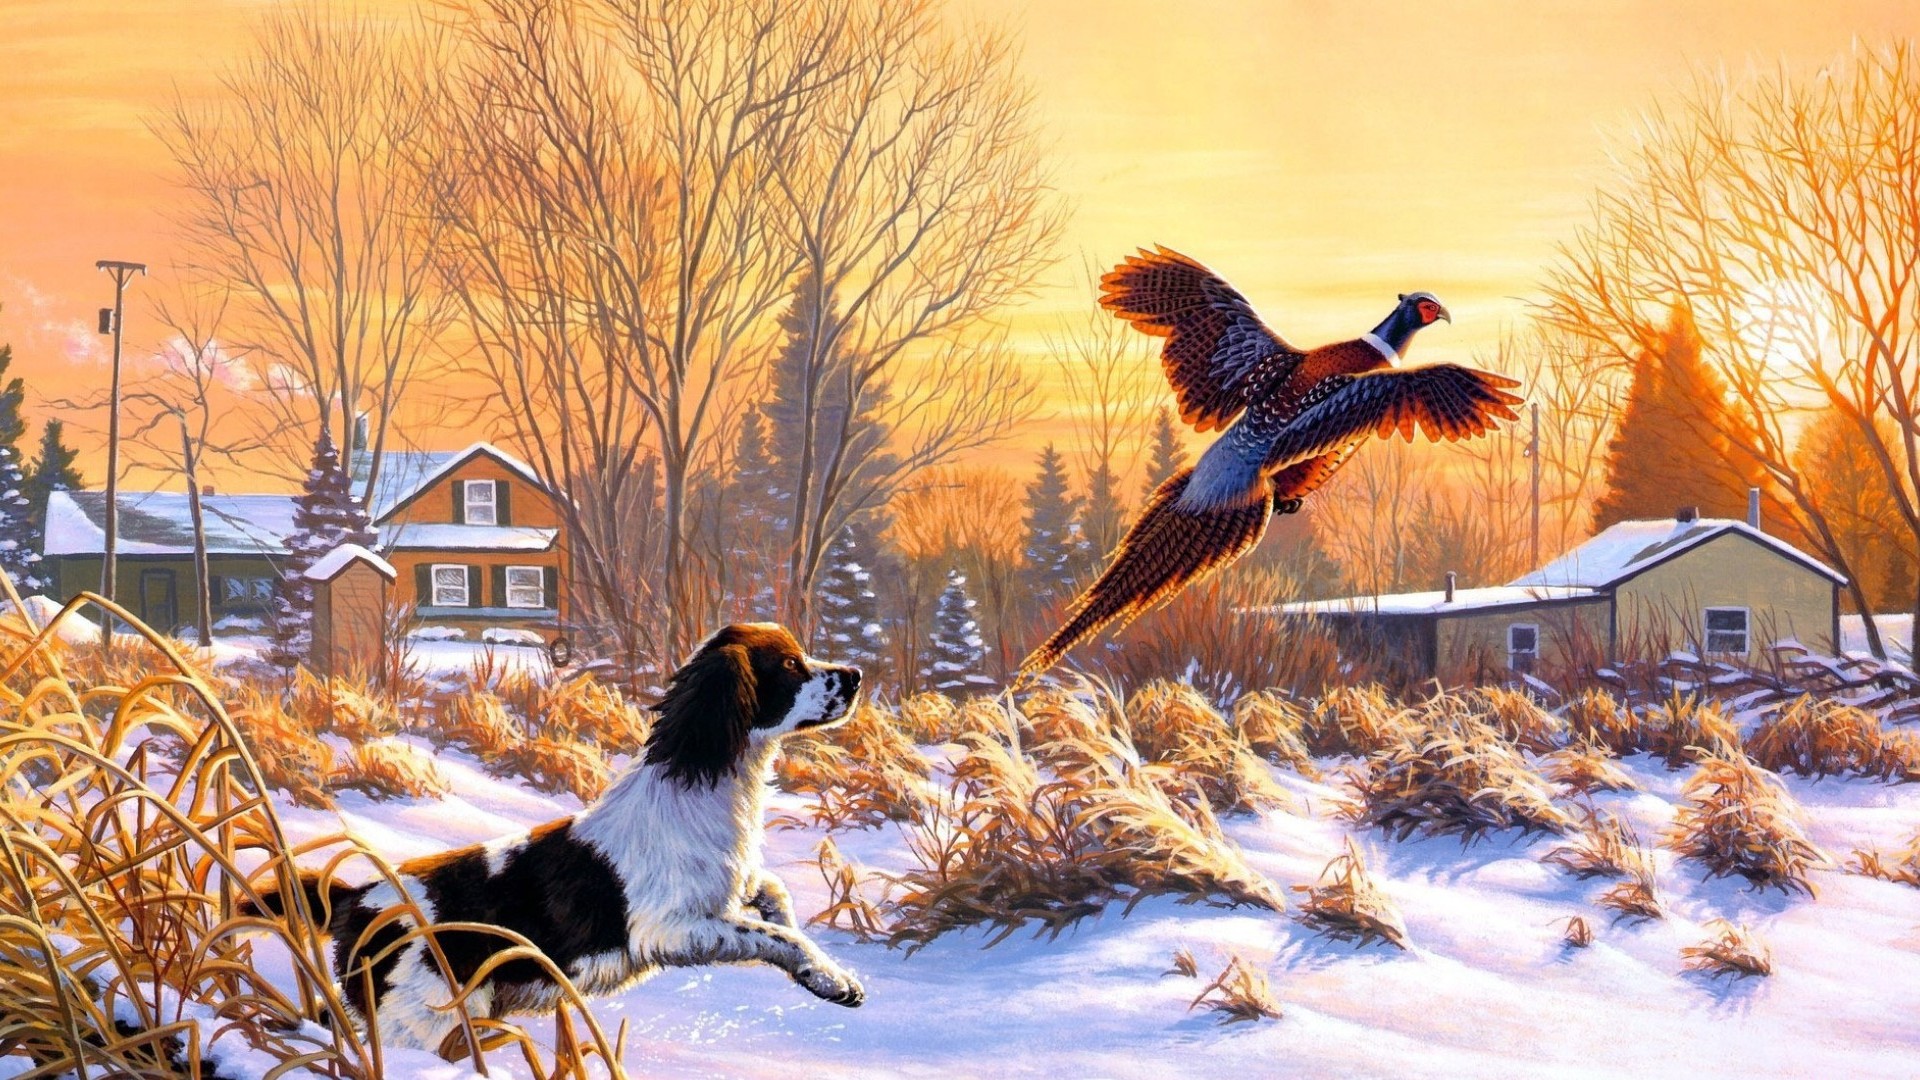 Скачать обои бесплатно Животные, Зима, Птицы, Собака, Деревня, Художественный картинка на рабочий стол ПК